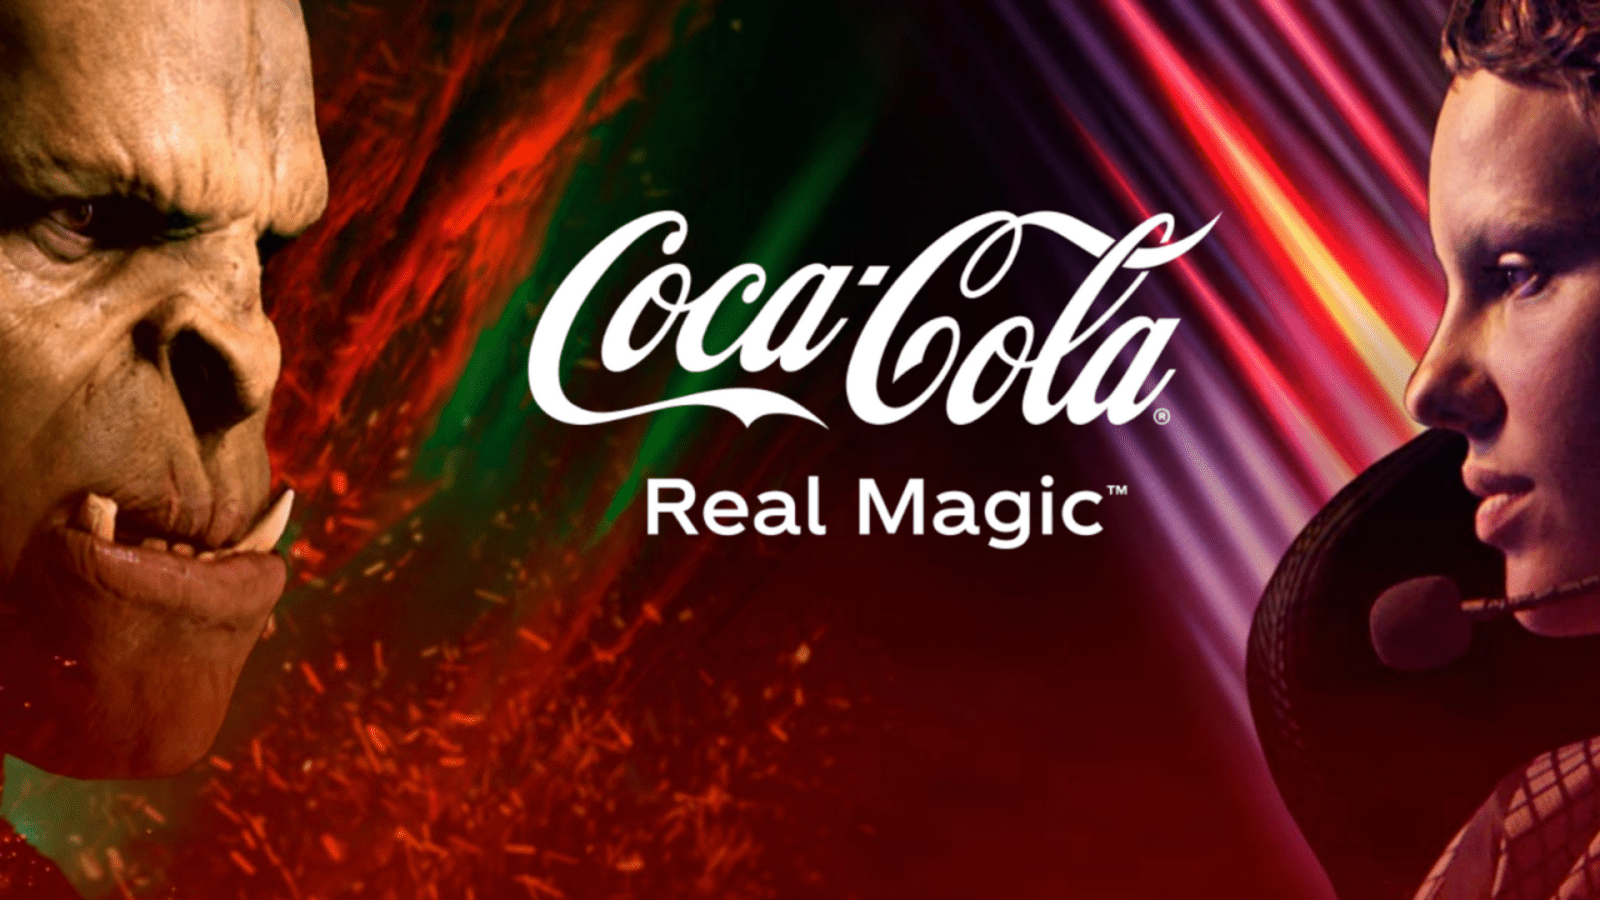 Real Magic Coca Cola